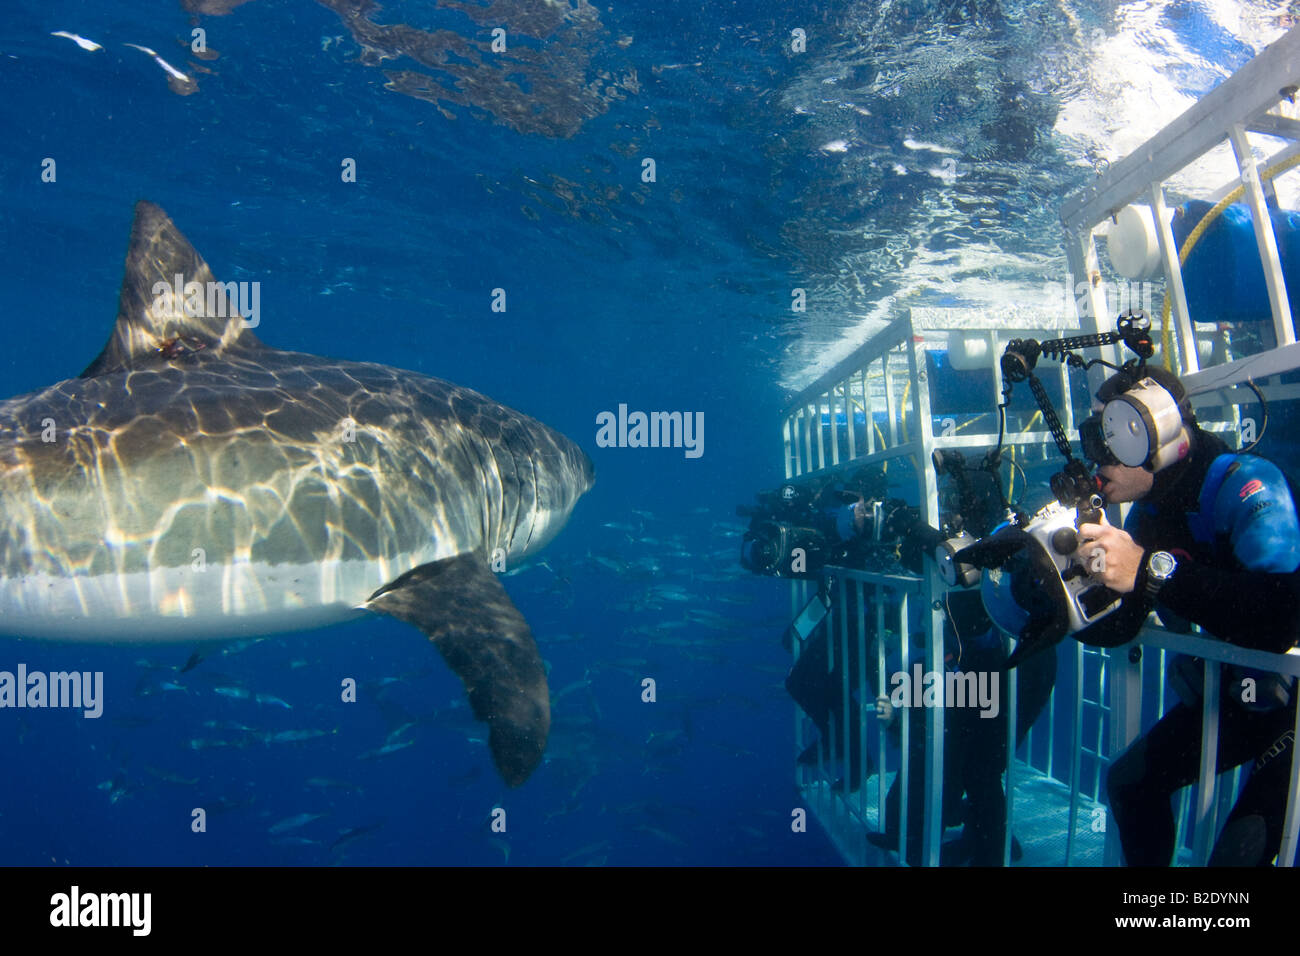 Les photographes (MR) obtenir un laissez-passer près d'un énorme grand requin blanc, Carcharodon carcharias, au large de l'île de Guadalupe, au Mexique. Banque D'Images